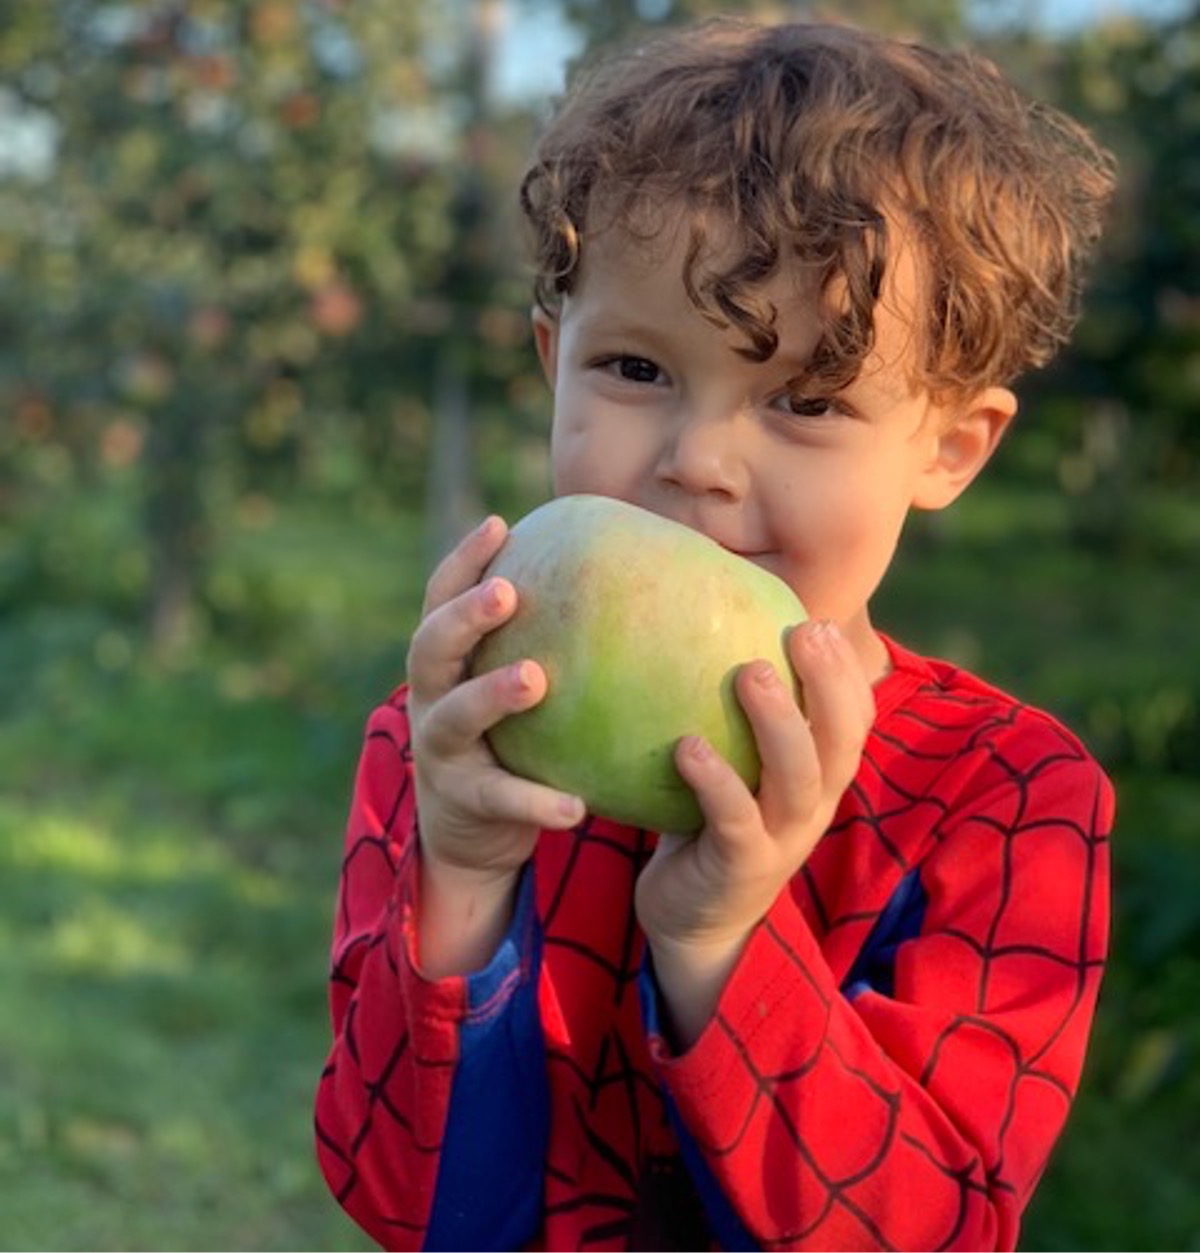 Kid apple picking